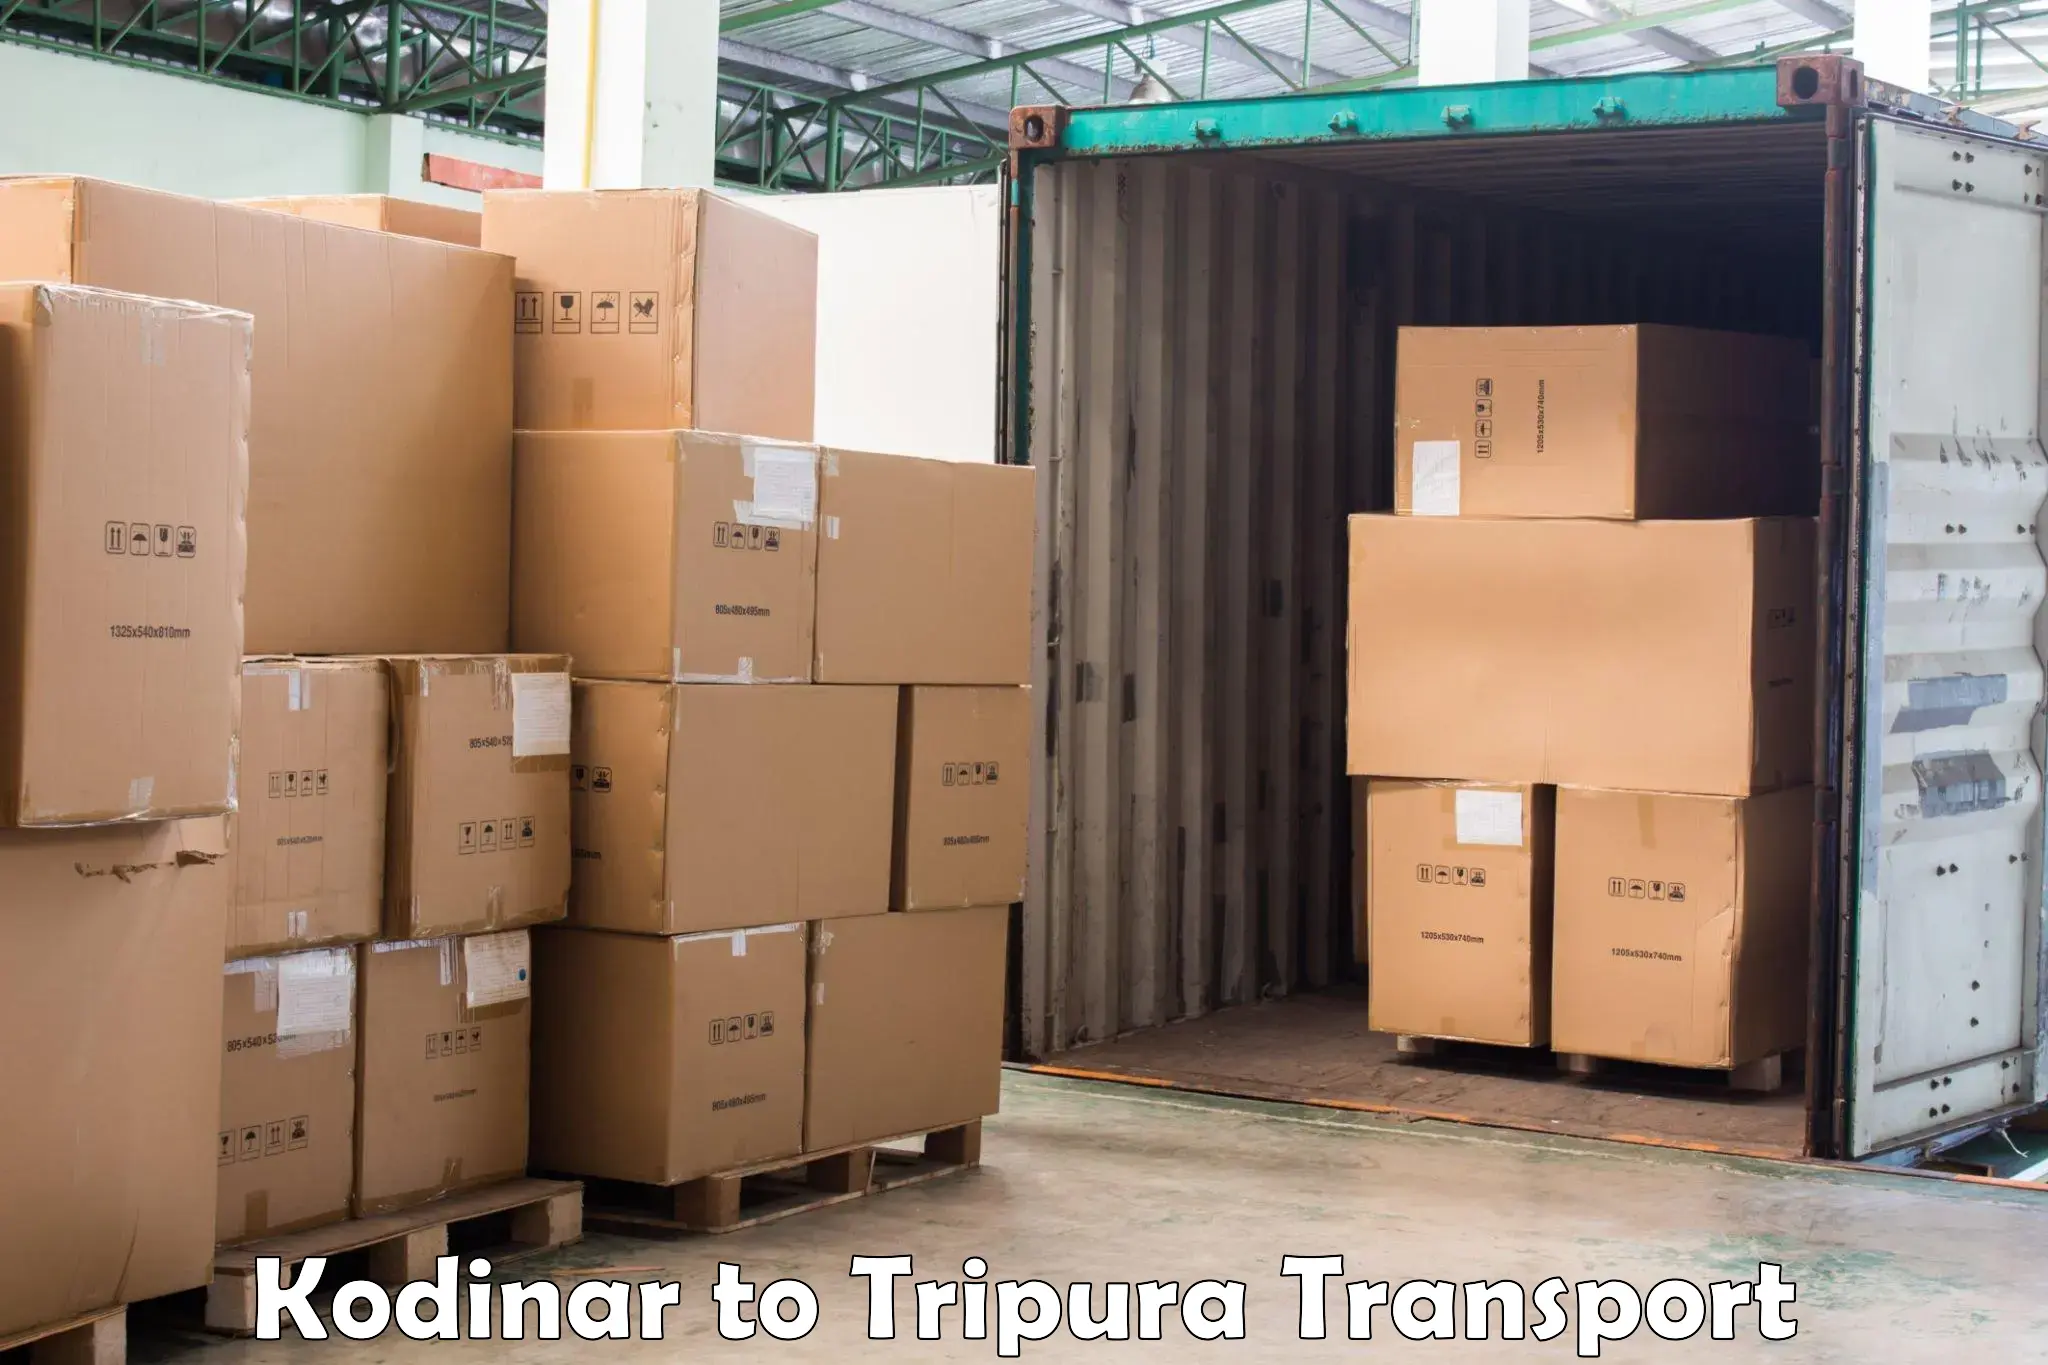 Transportation services in Kodinar to IIIT Agartala